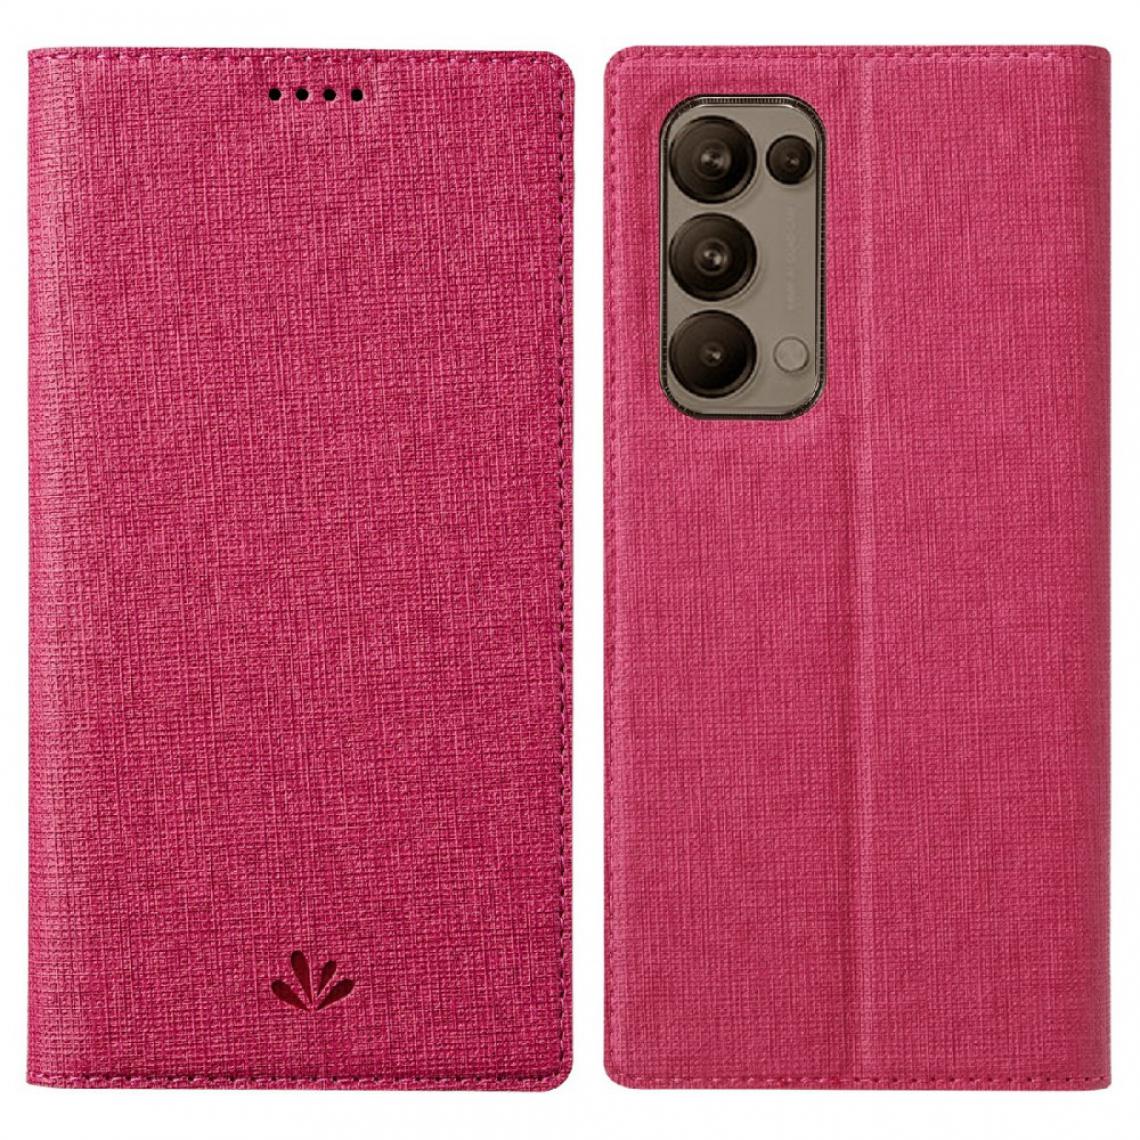 Other - Etui en PU avec support et porte-cartes rose pour votre Oppo Reno5 Pro+ 5G - Coque, étui smartphone